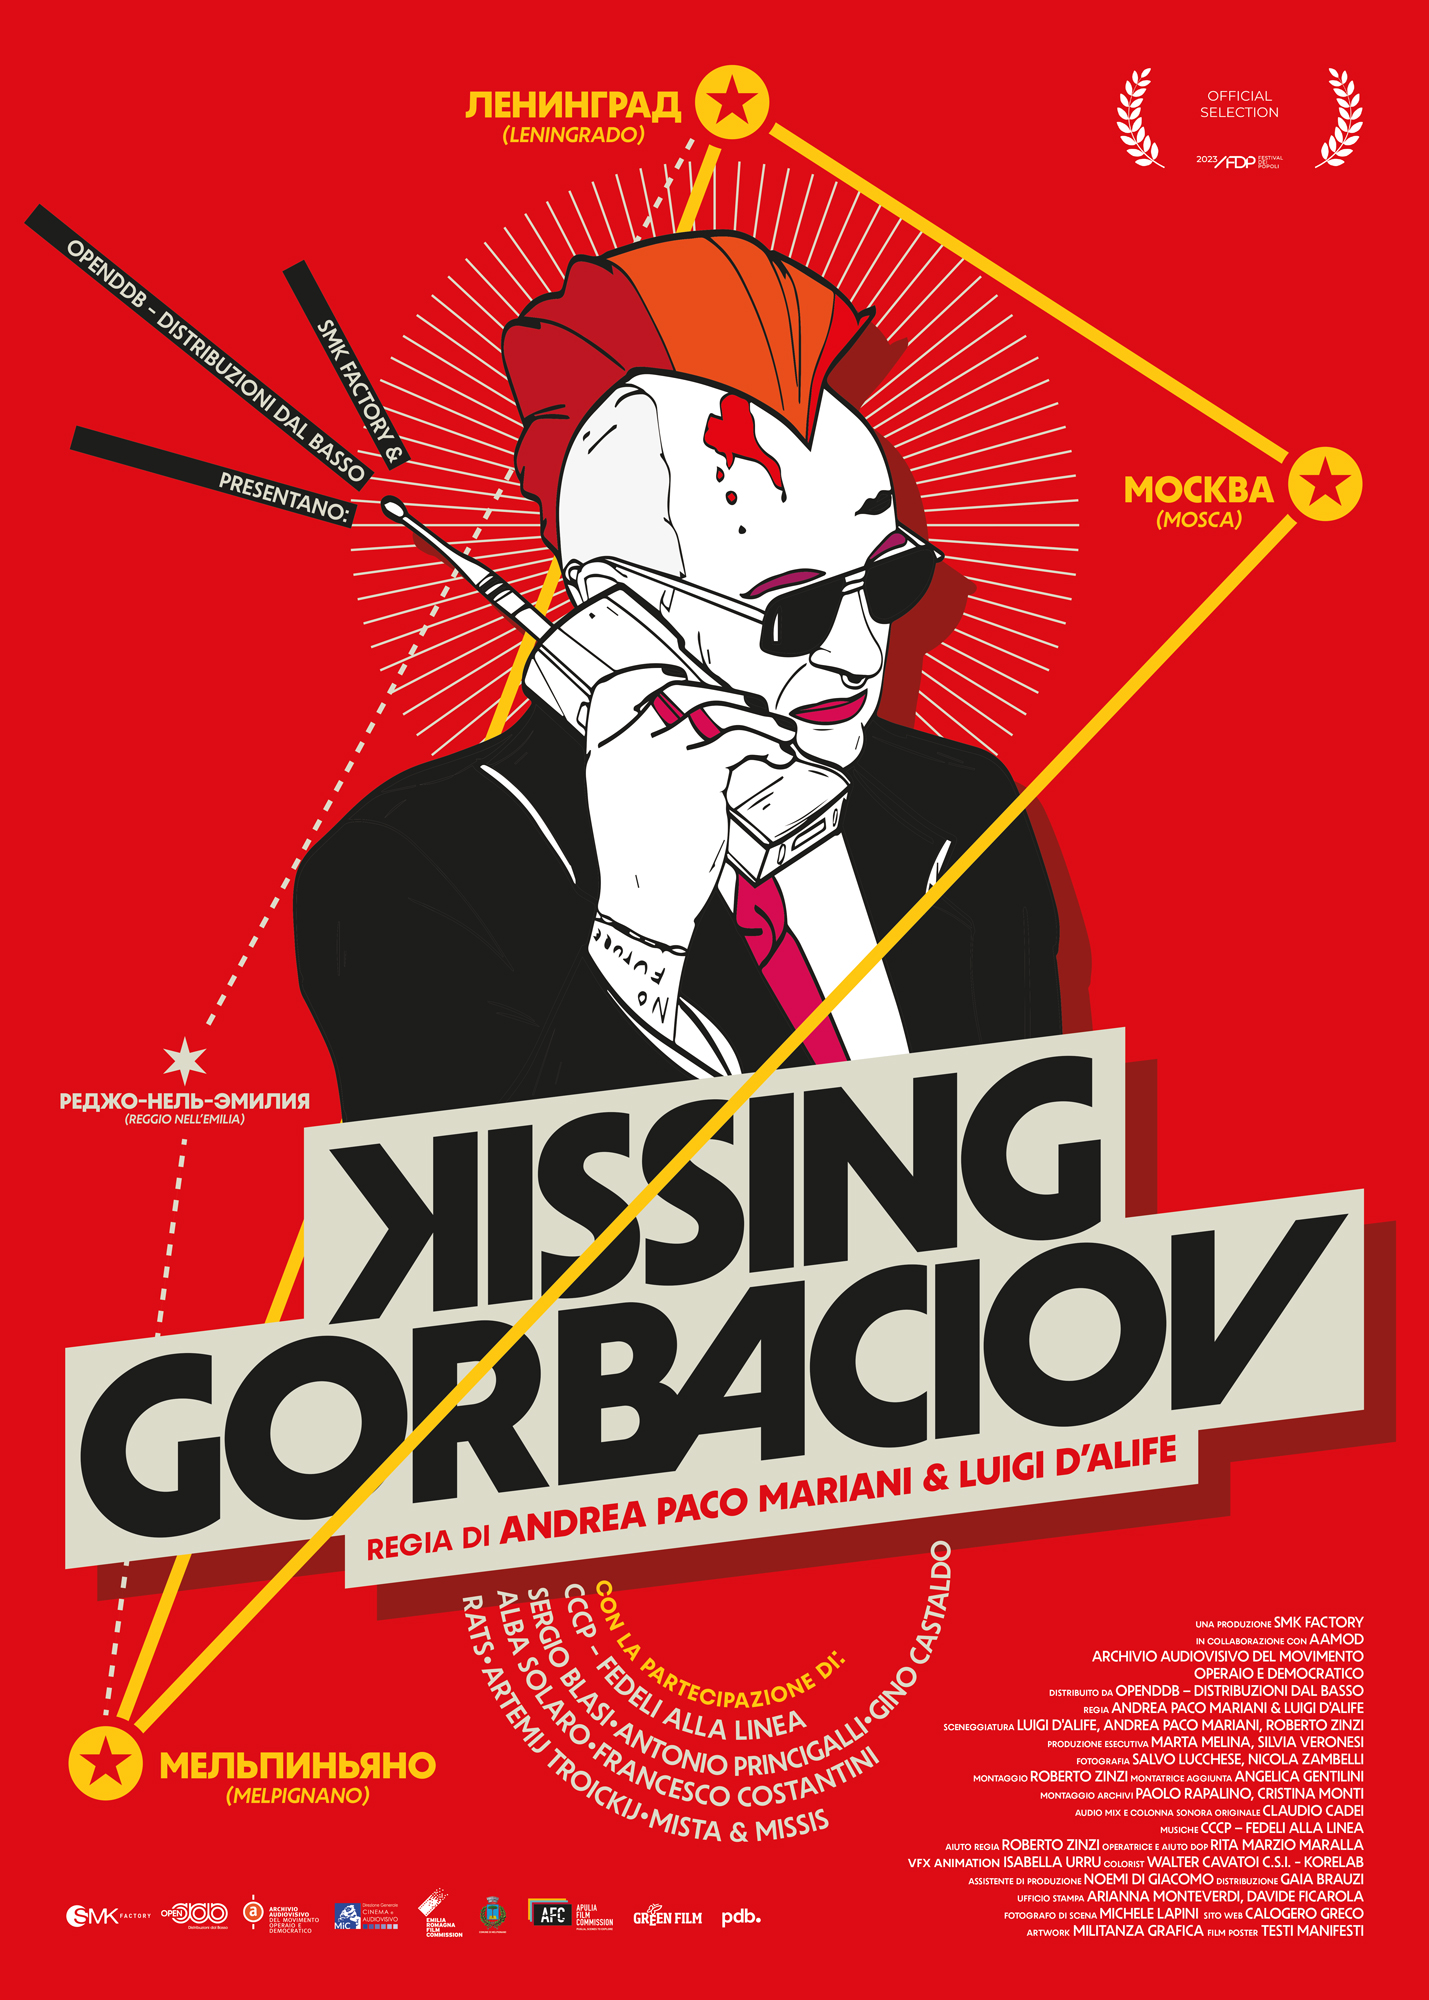 POSTER KISSING GORBACIOV WEB